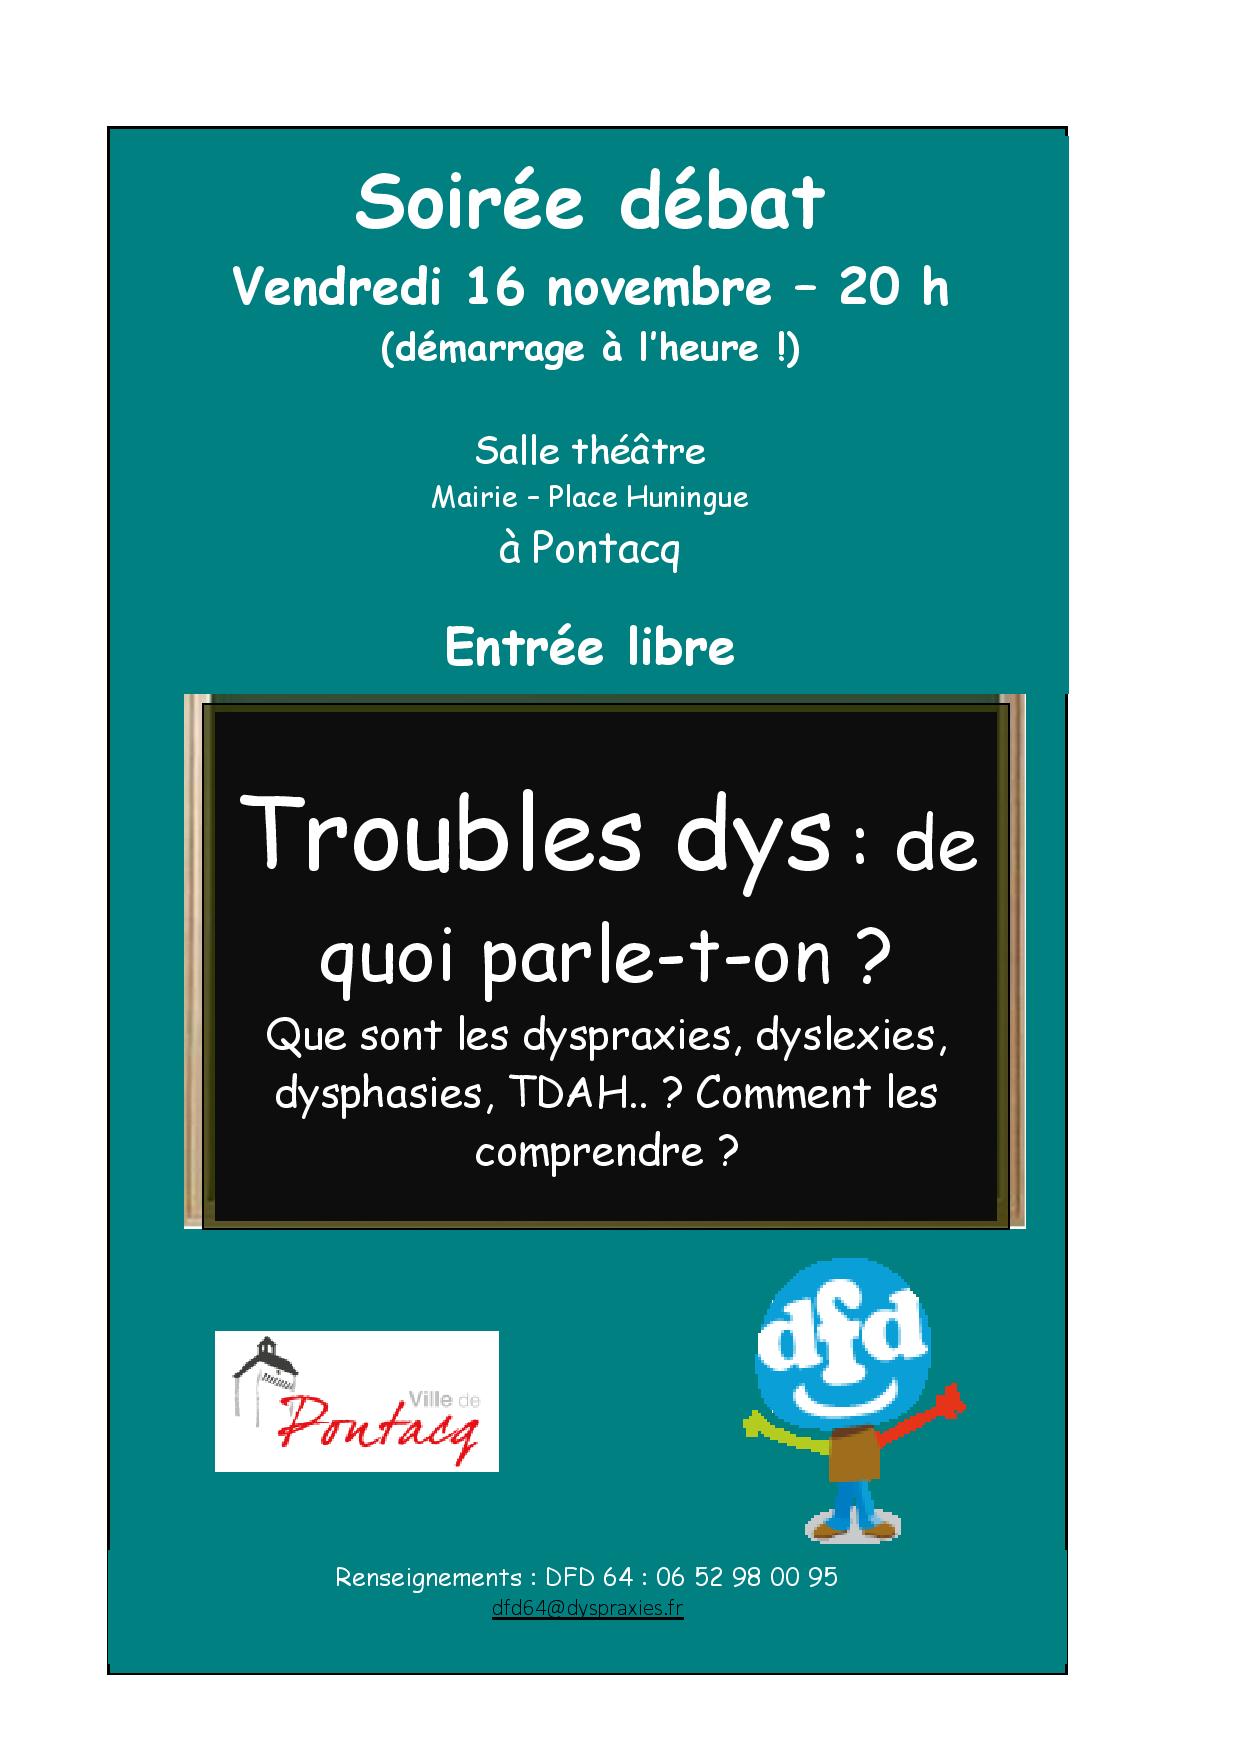 DFD 64 : Conférence "Troubles dys, de quoi parle-t-on ?"